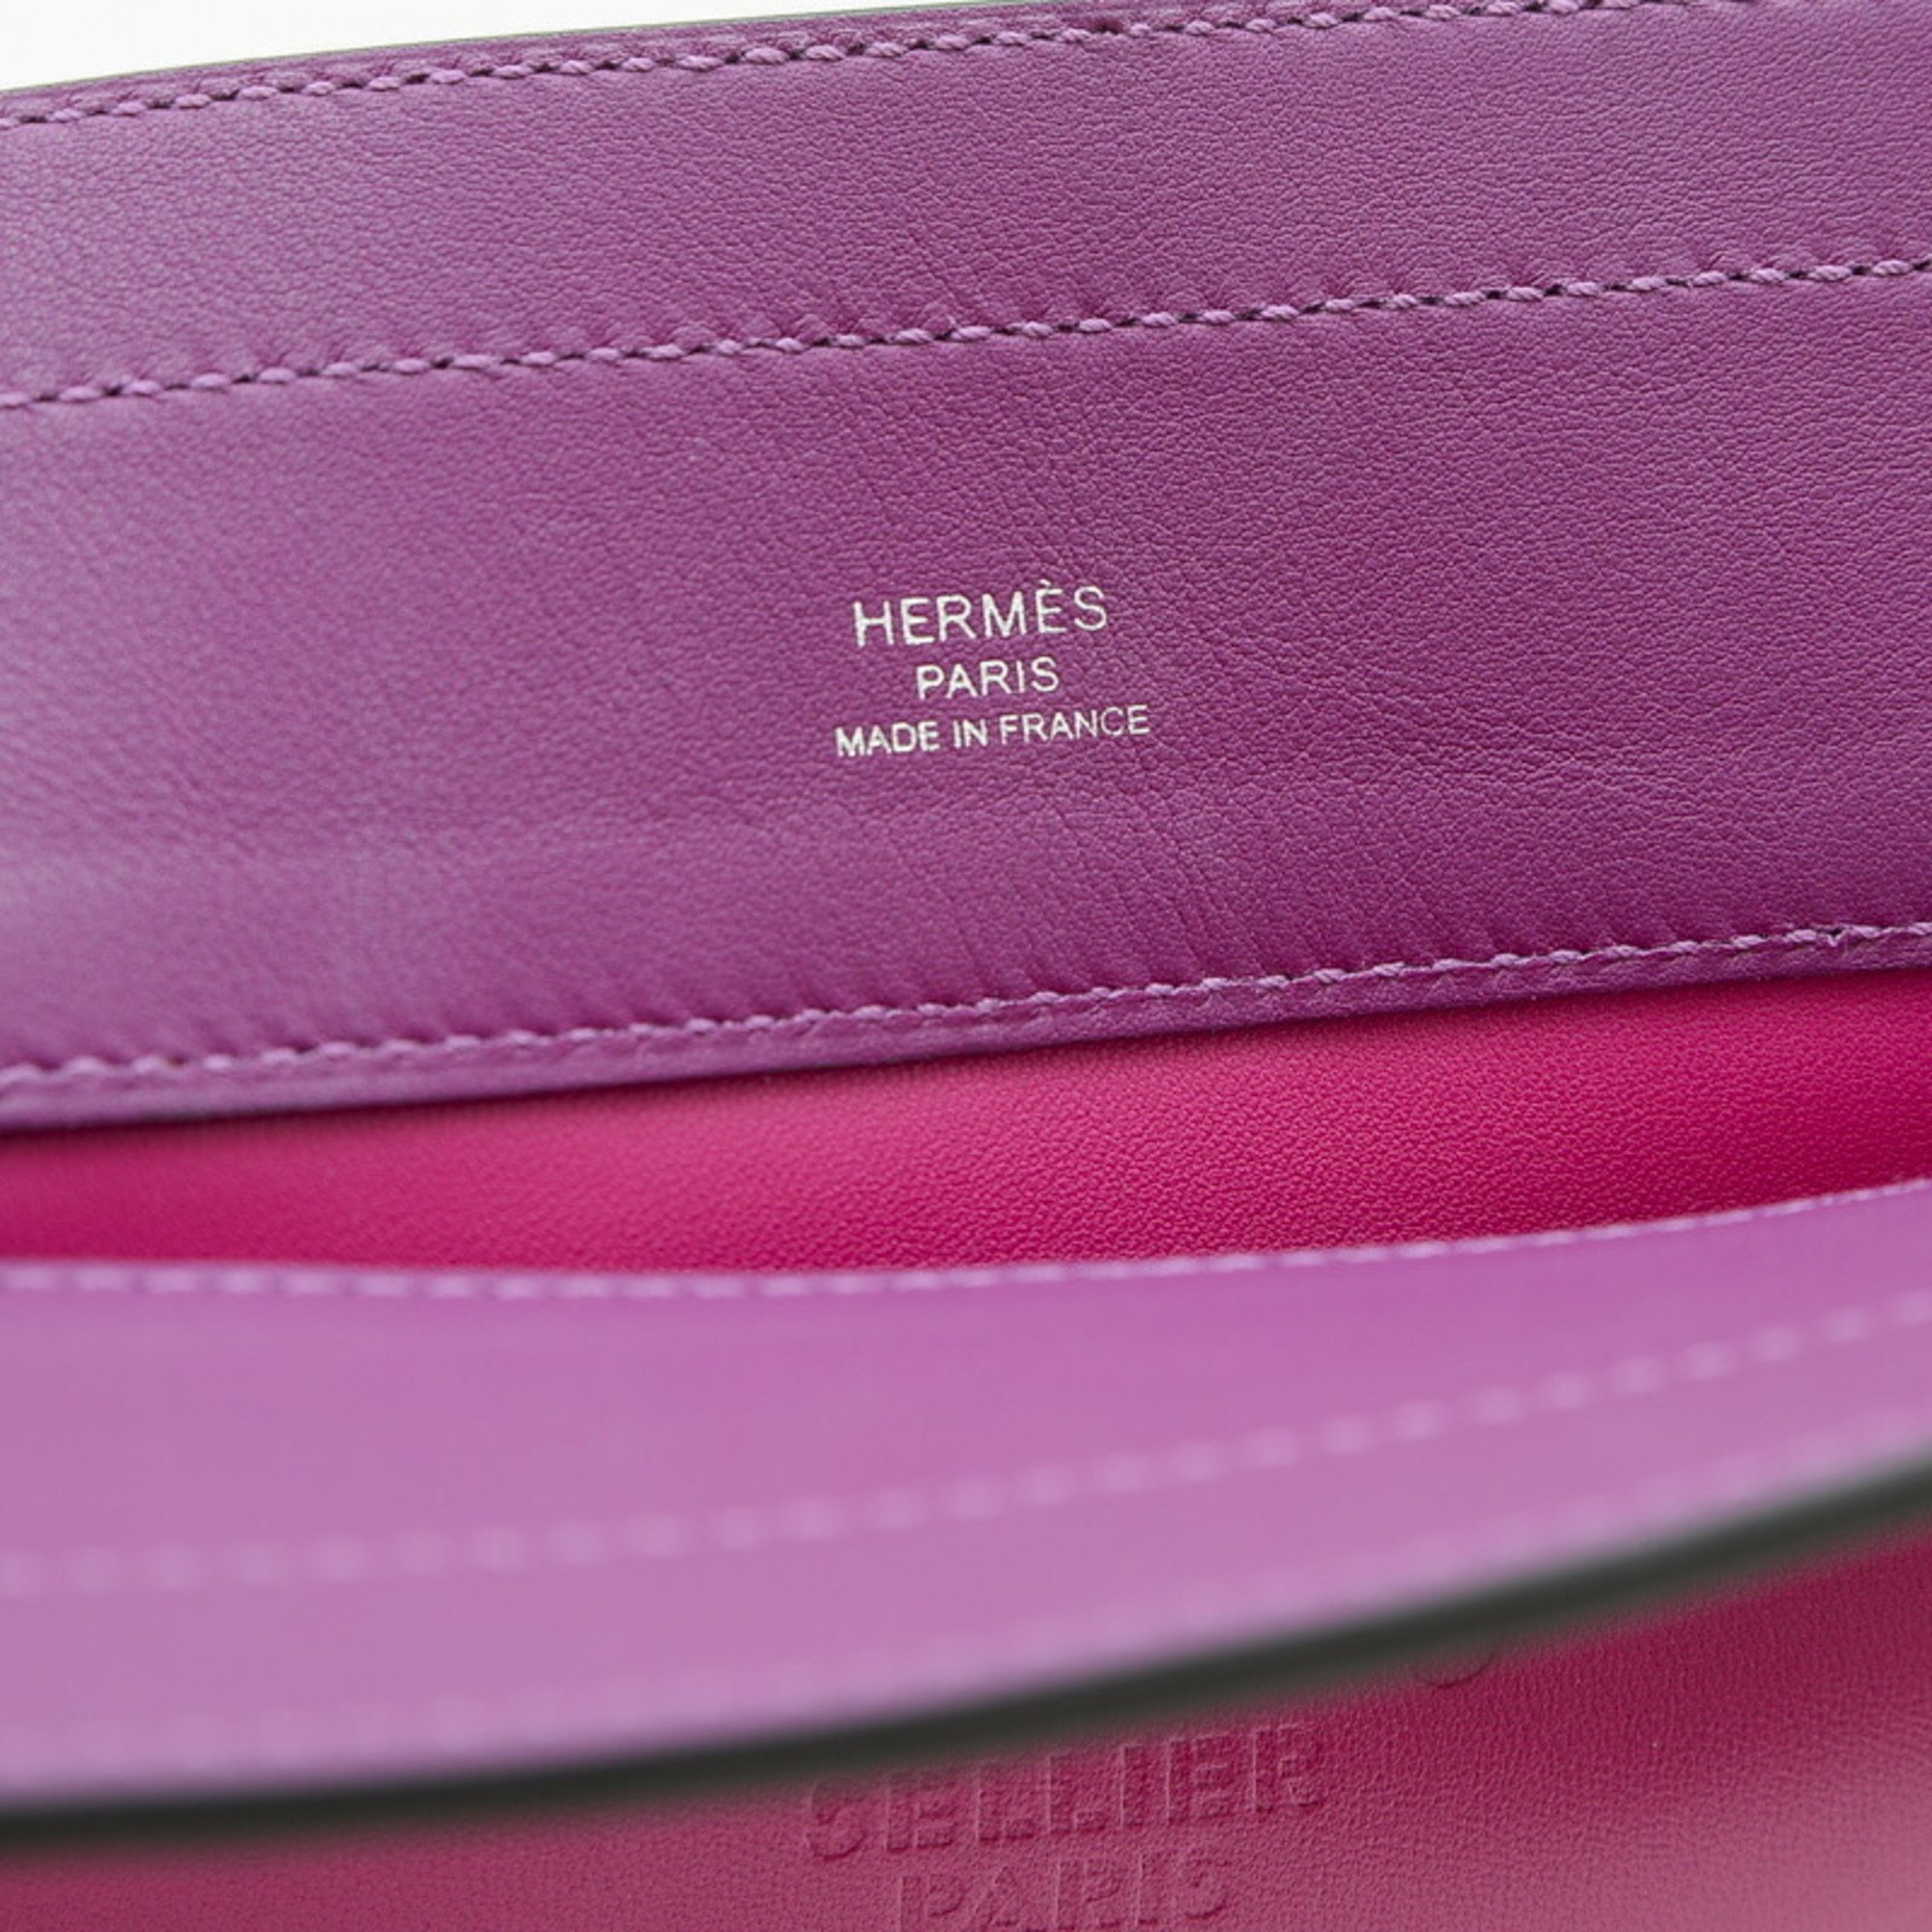 Hermes Sac Aline Handbag Swift Rose Purple Anemone U Stamp